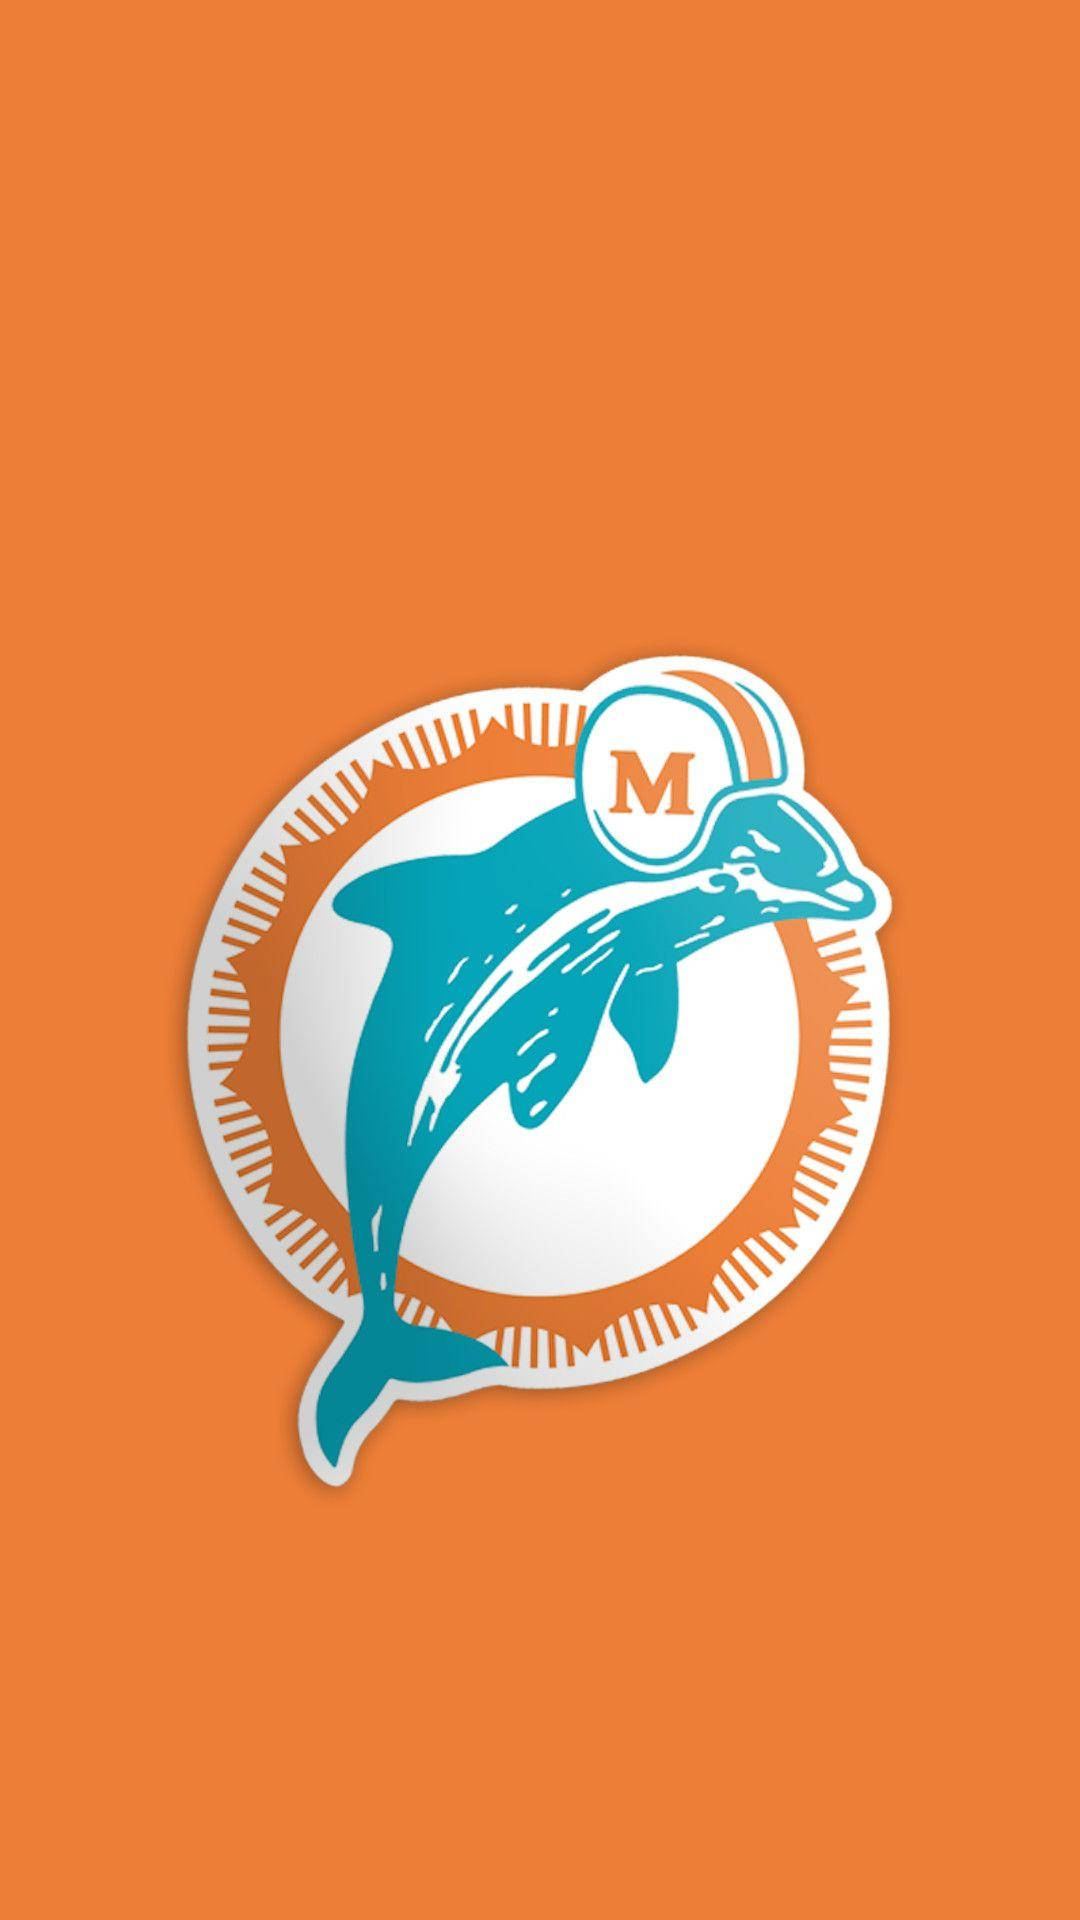 Repräsentierensie Die Miami Dolphins Mit Unserem Premium-iphone Wallpaper